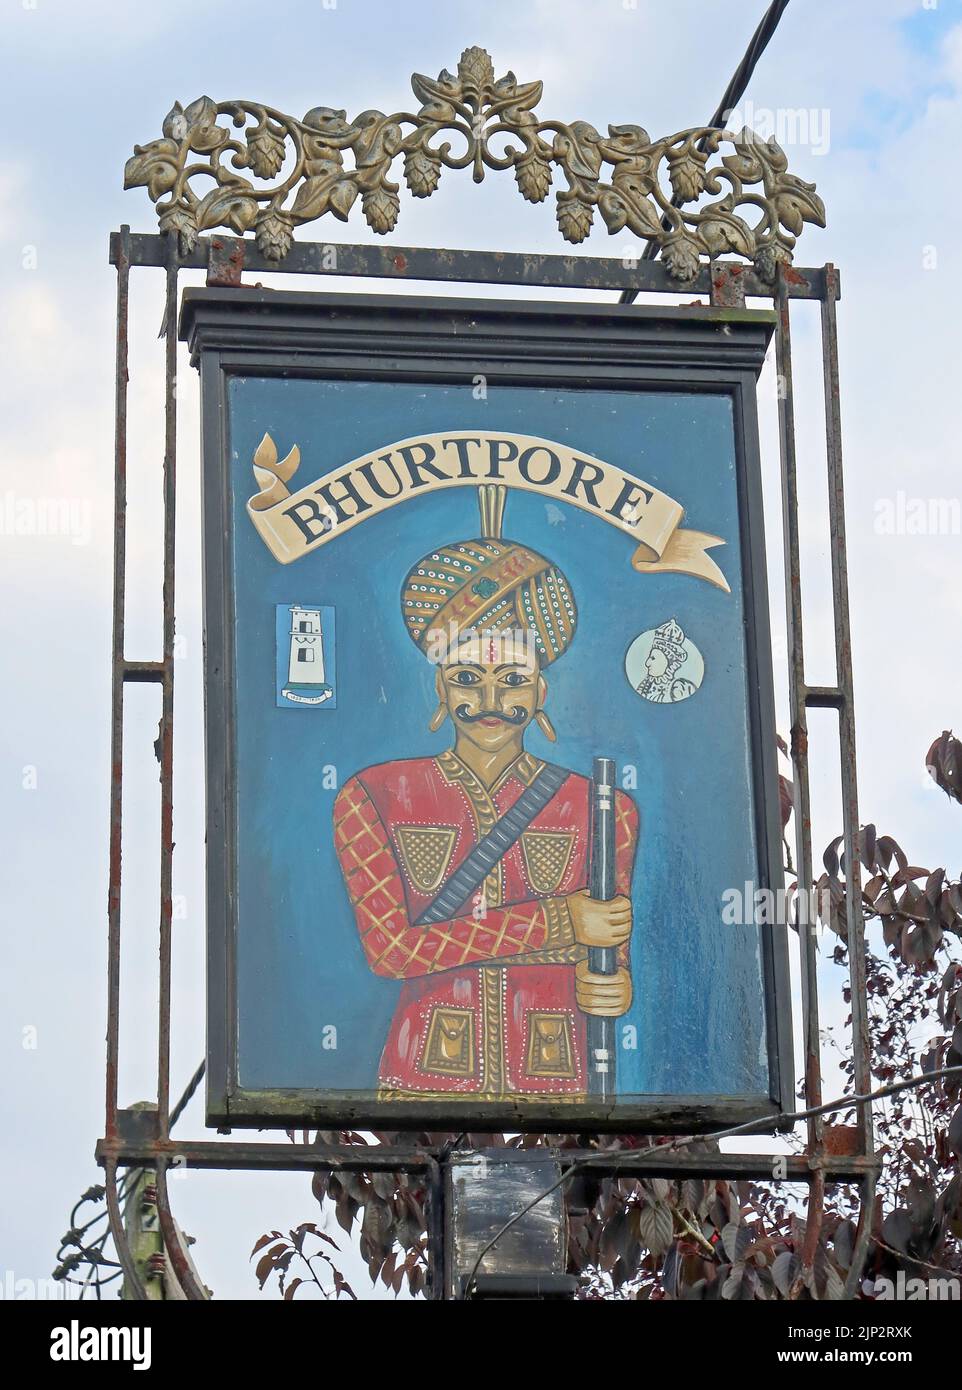 Bhurtpore Inn, Wrenbury Rd, Aston, Nantwich, Cheshire, England, Vereinigtes Königreich, CW5 8DQ - Schilder und CAMRA Real Ale - Craft-Bier und Cidre Stockfoto